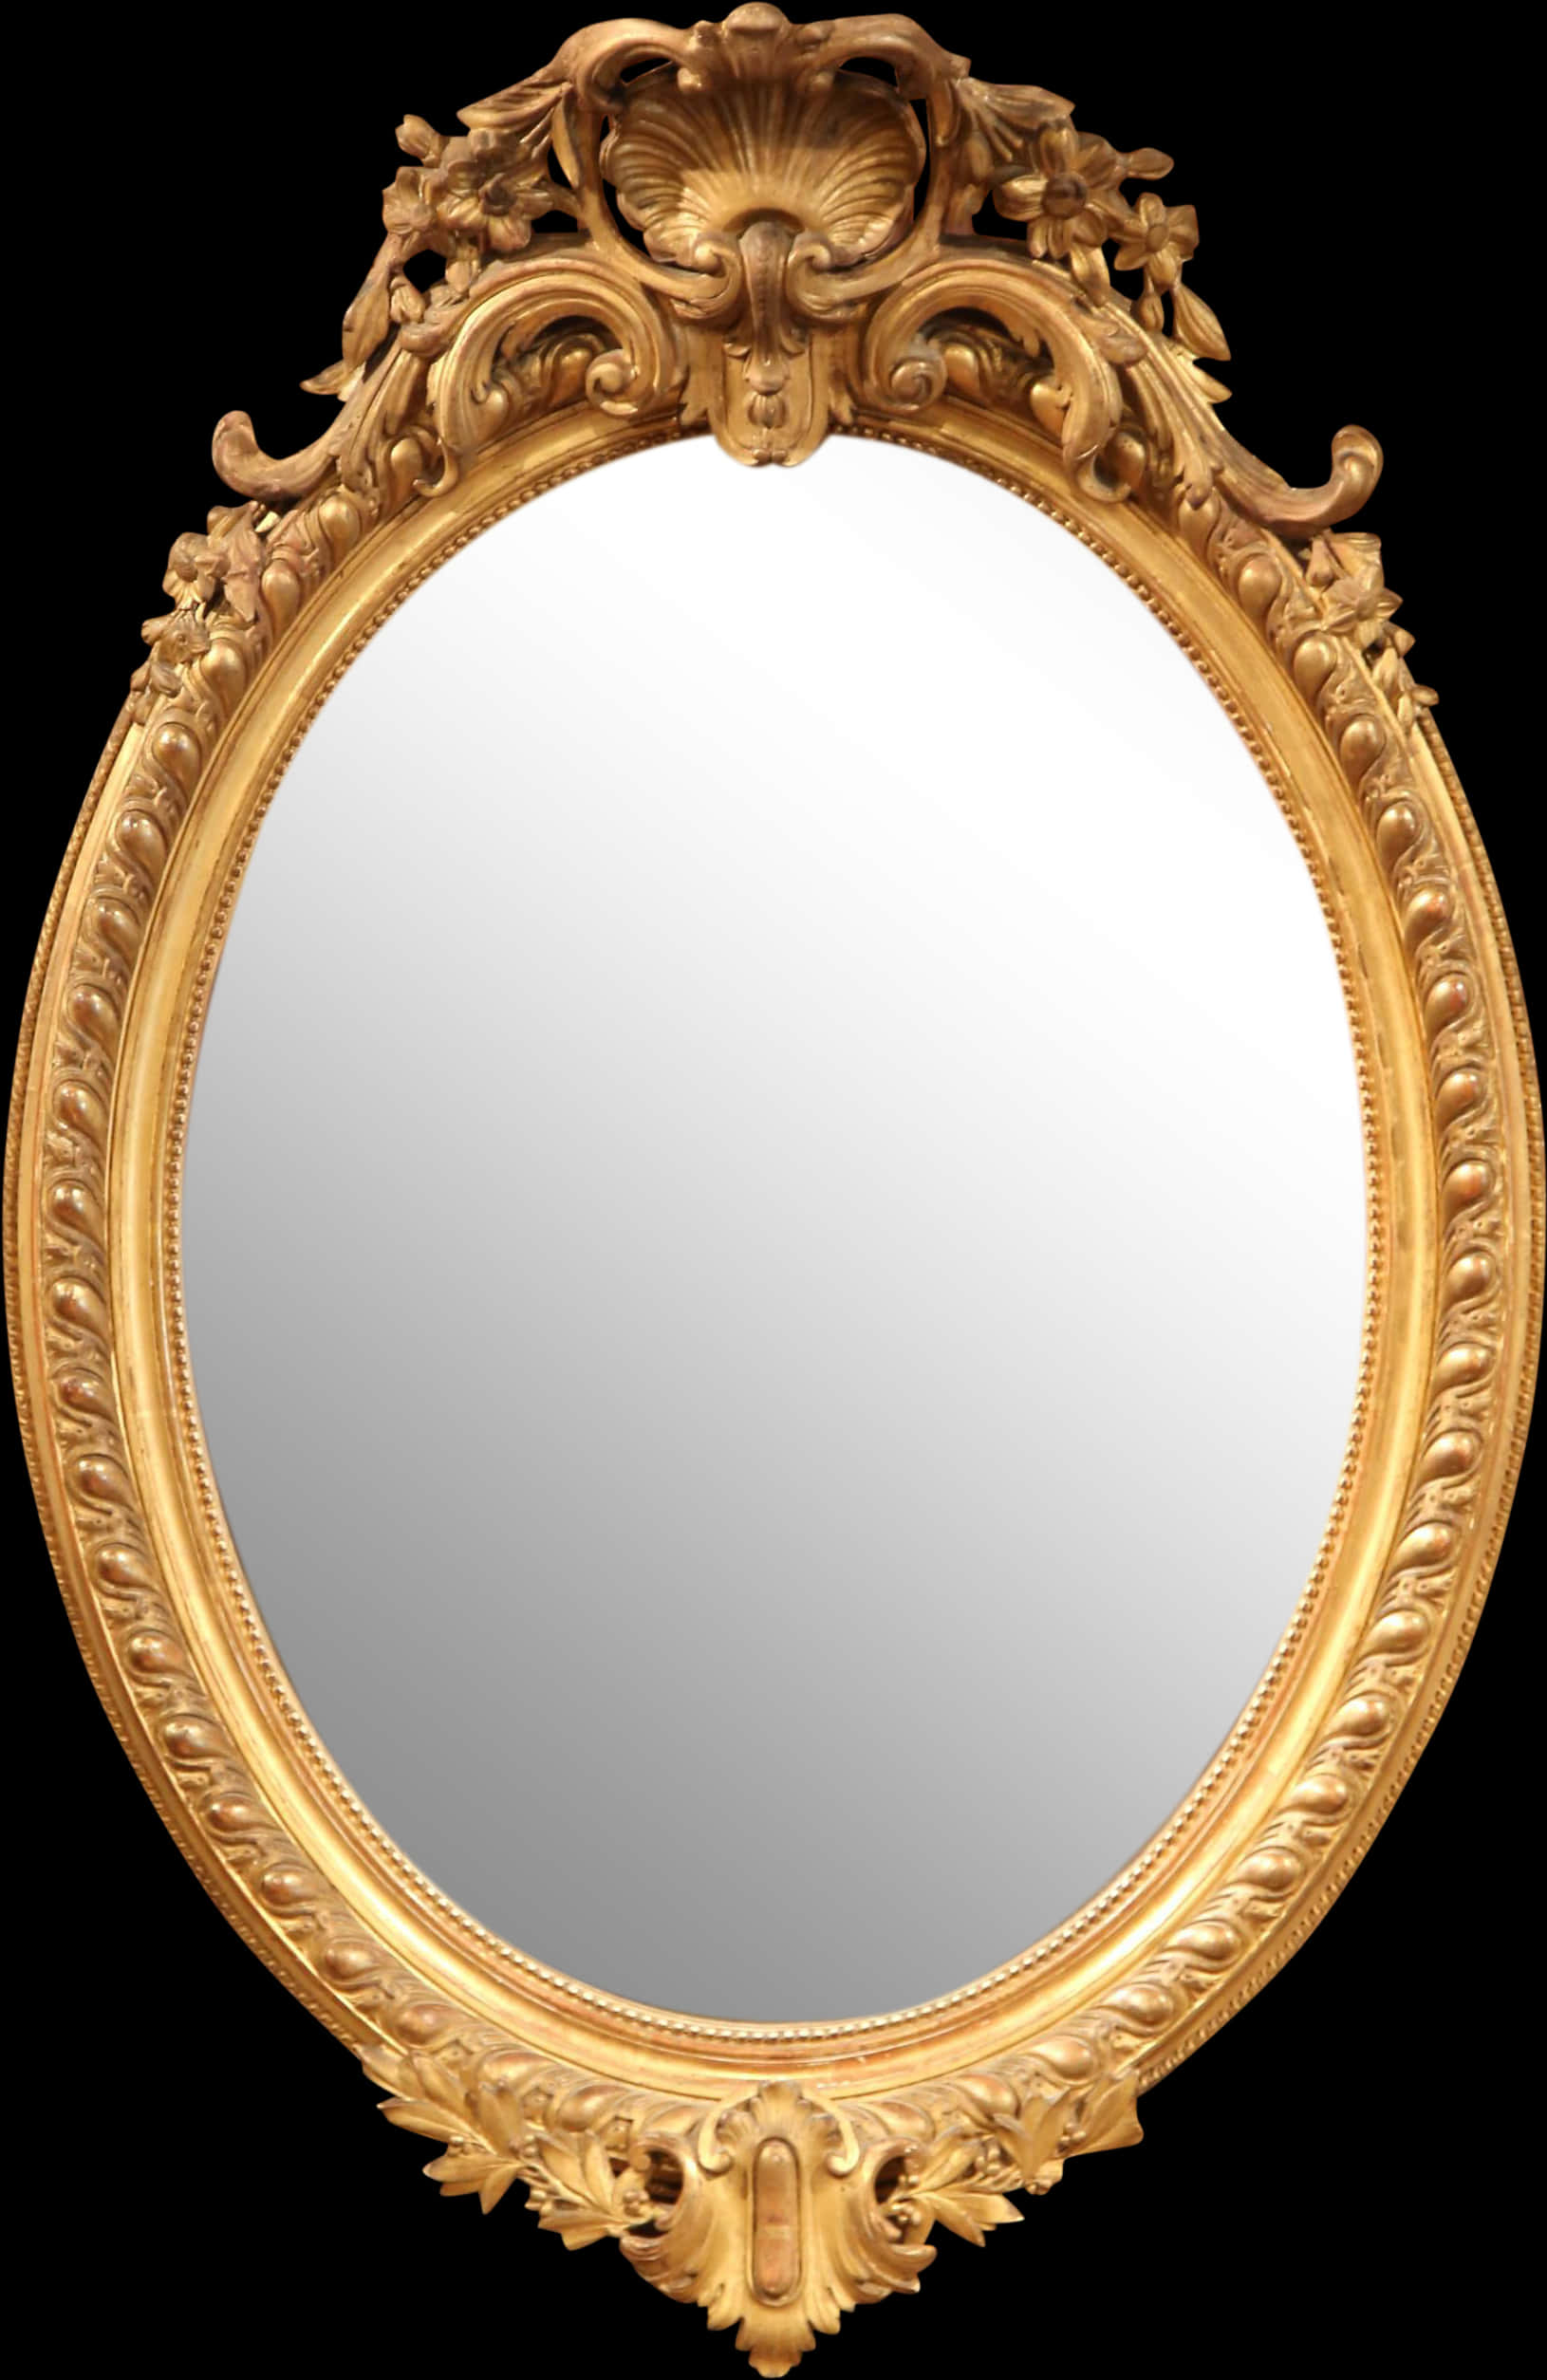 Ornate Golden Frame Mirror.jpg